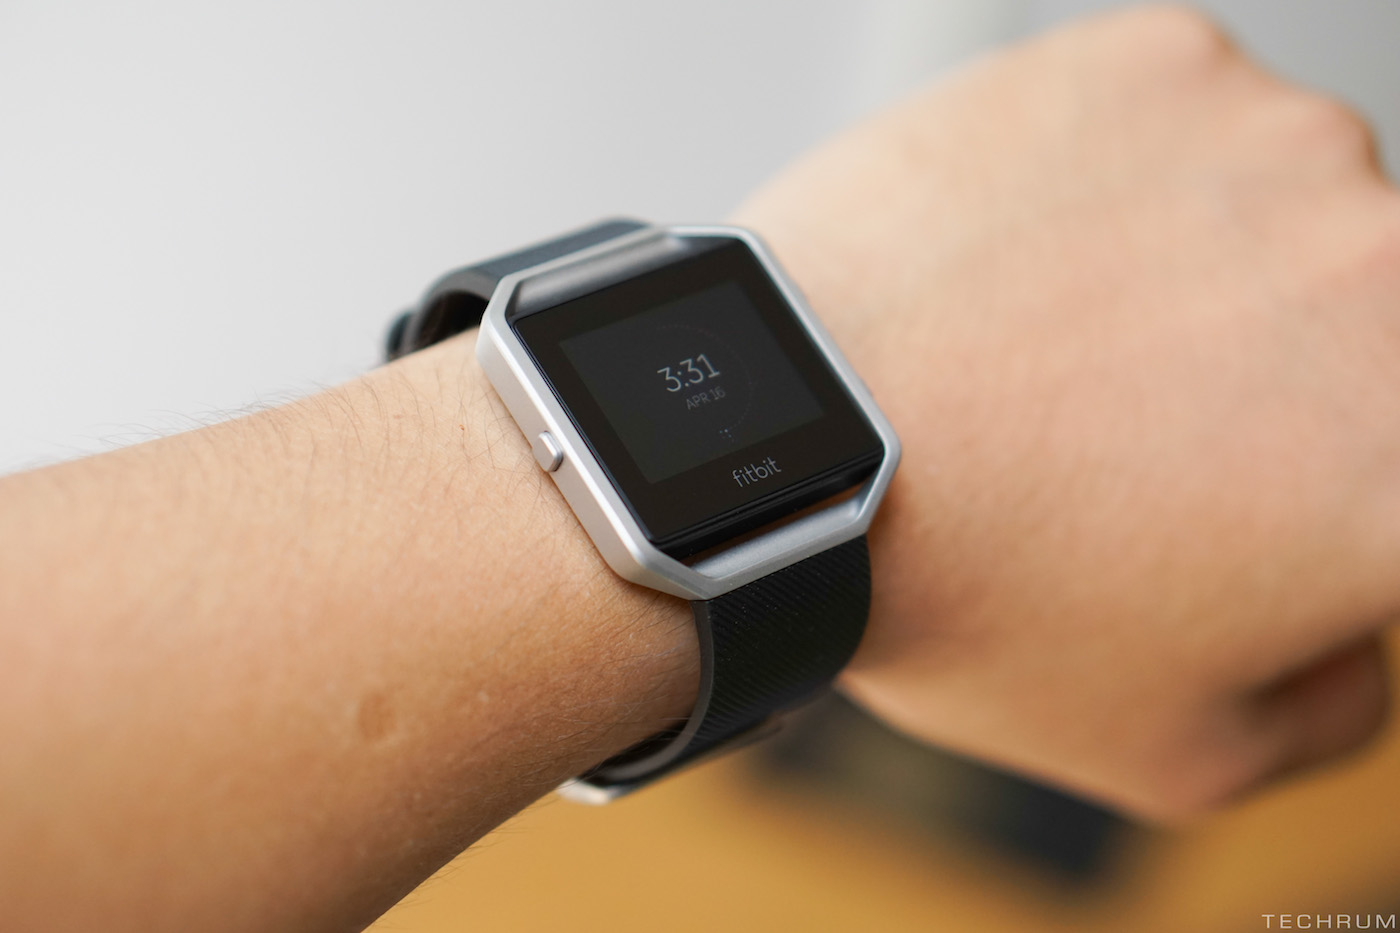 Trên tay sản phẩm đồng hồ theo dõi sức khỏe Fitbit Blaze (5 triệu đồng) 9L9fG